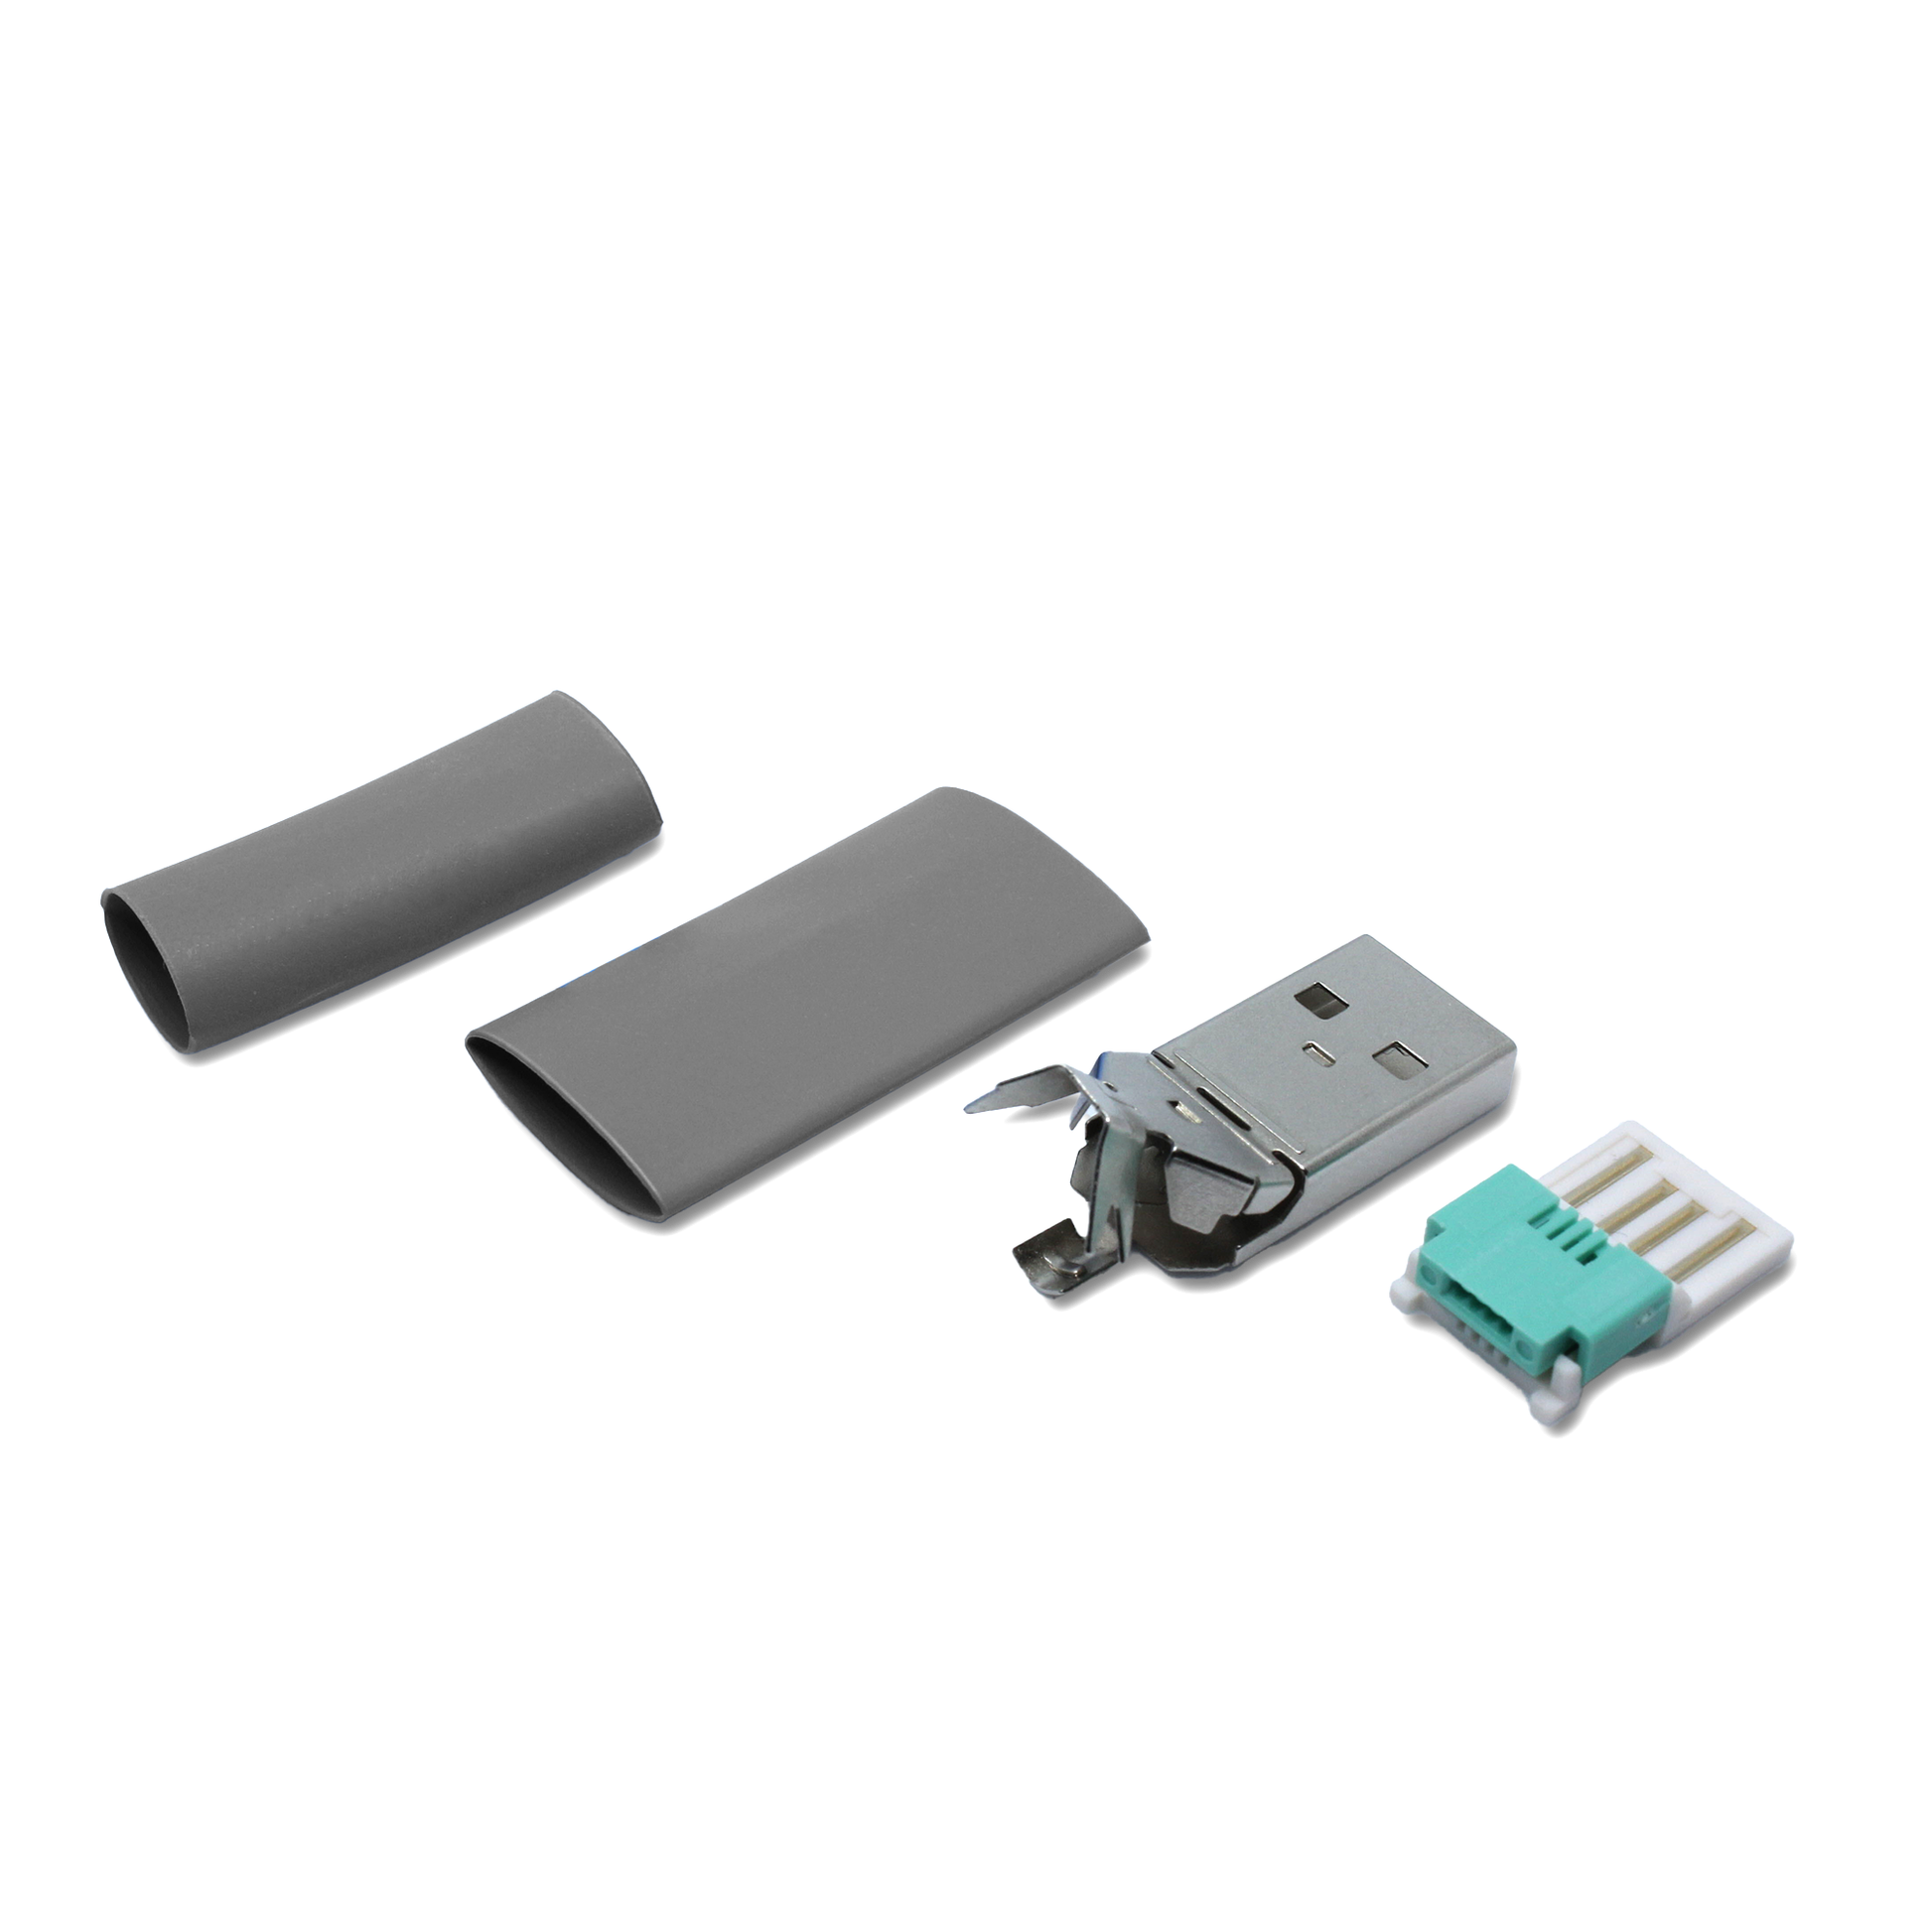 USB A Stecker Ersatzteil grau in Einzelteilen, mit zusätzlichem kleinen Schrumpfschlauch für die Reparatur (lötfrei/ crimpen) dünner USB 2.0 Kabel